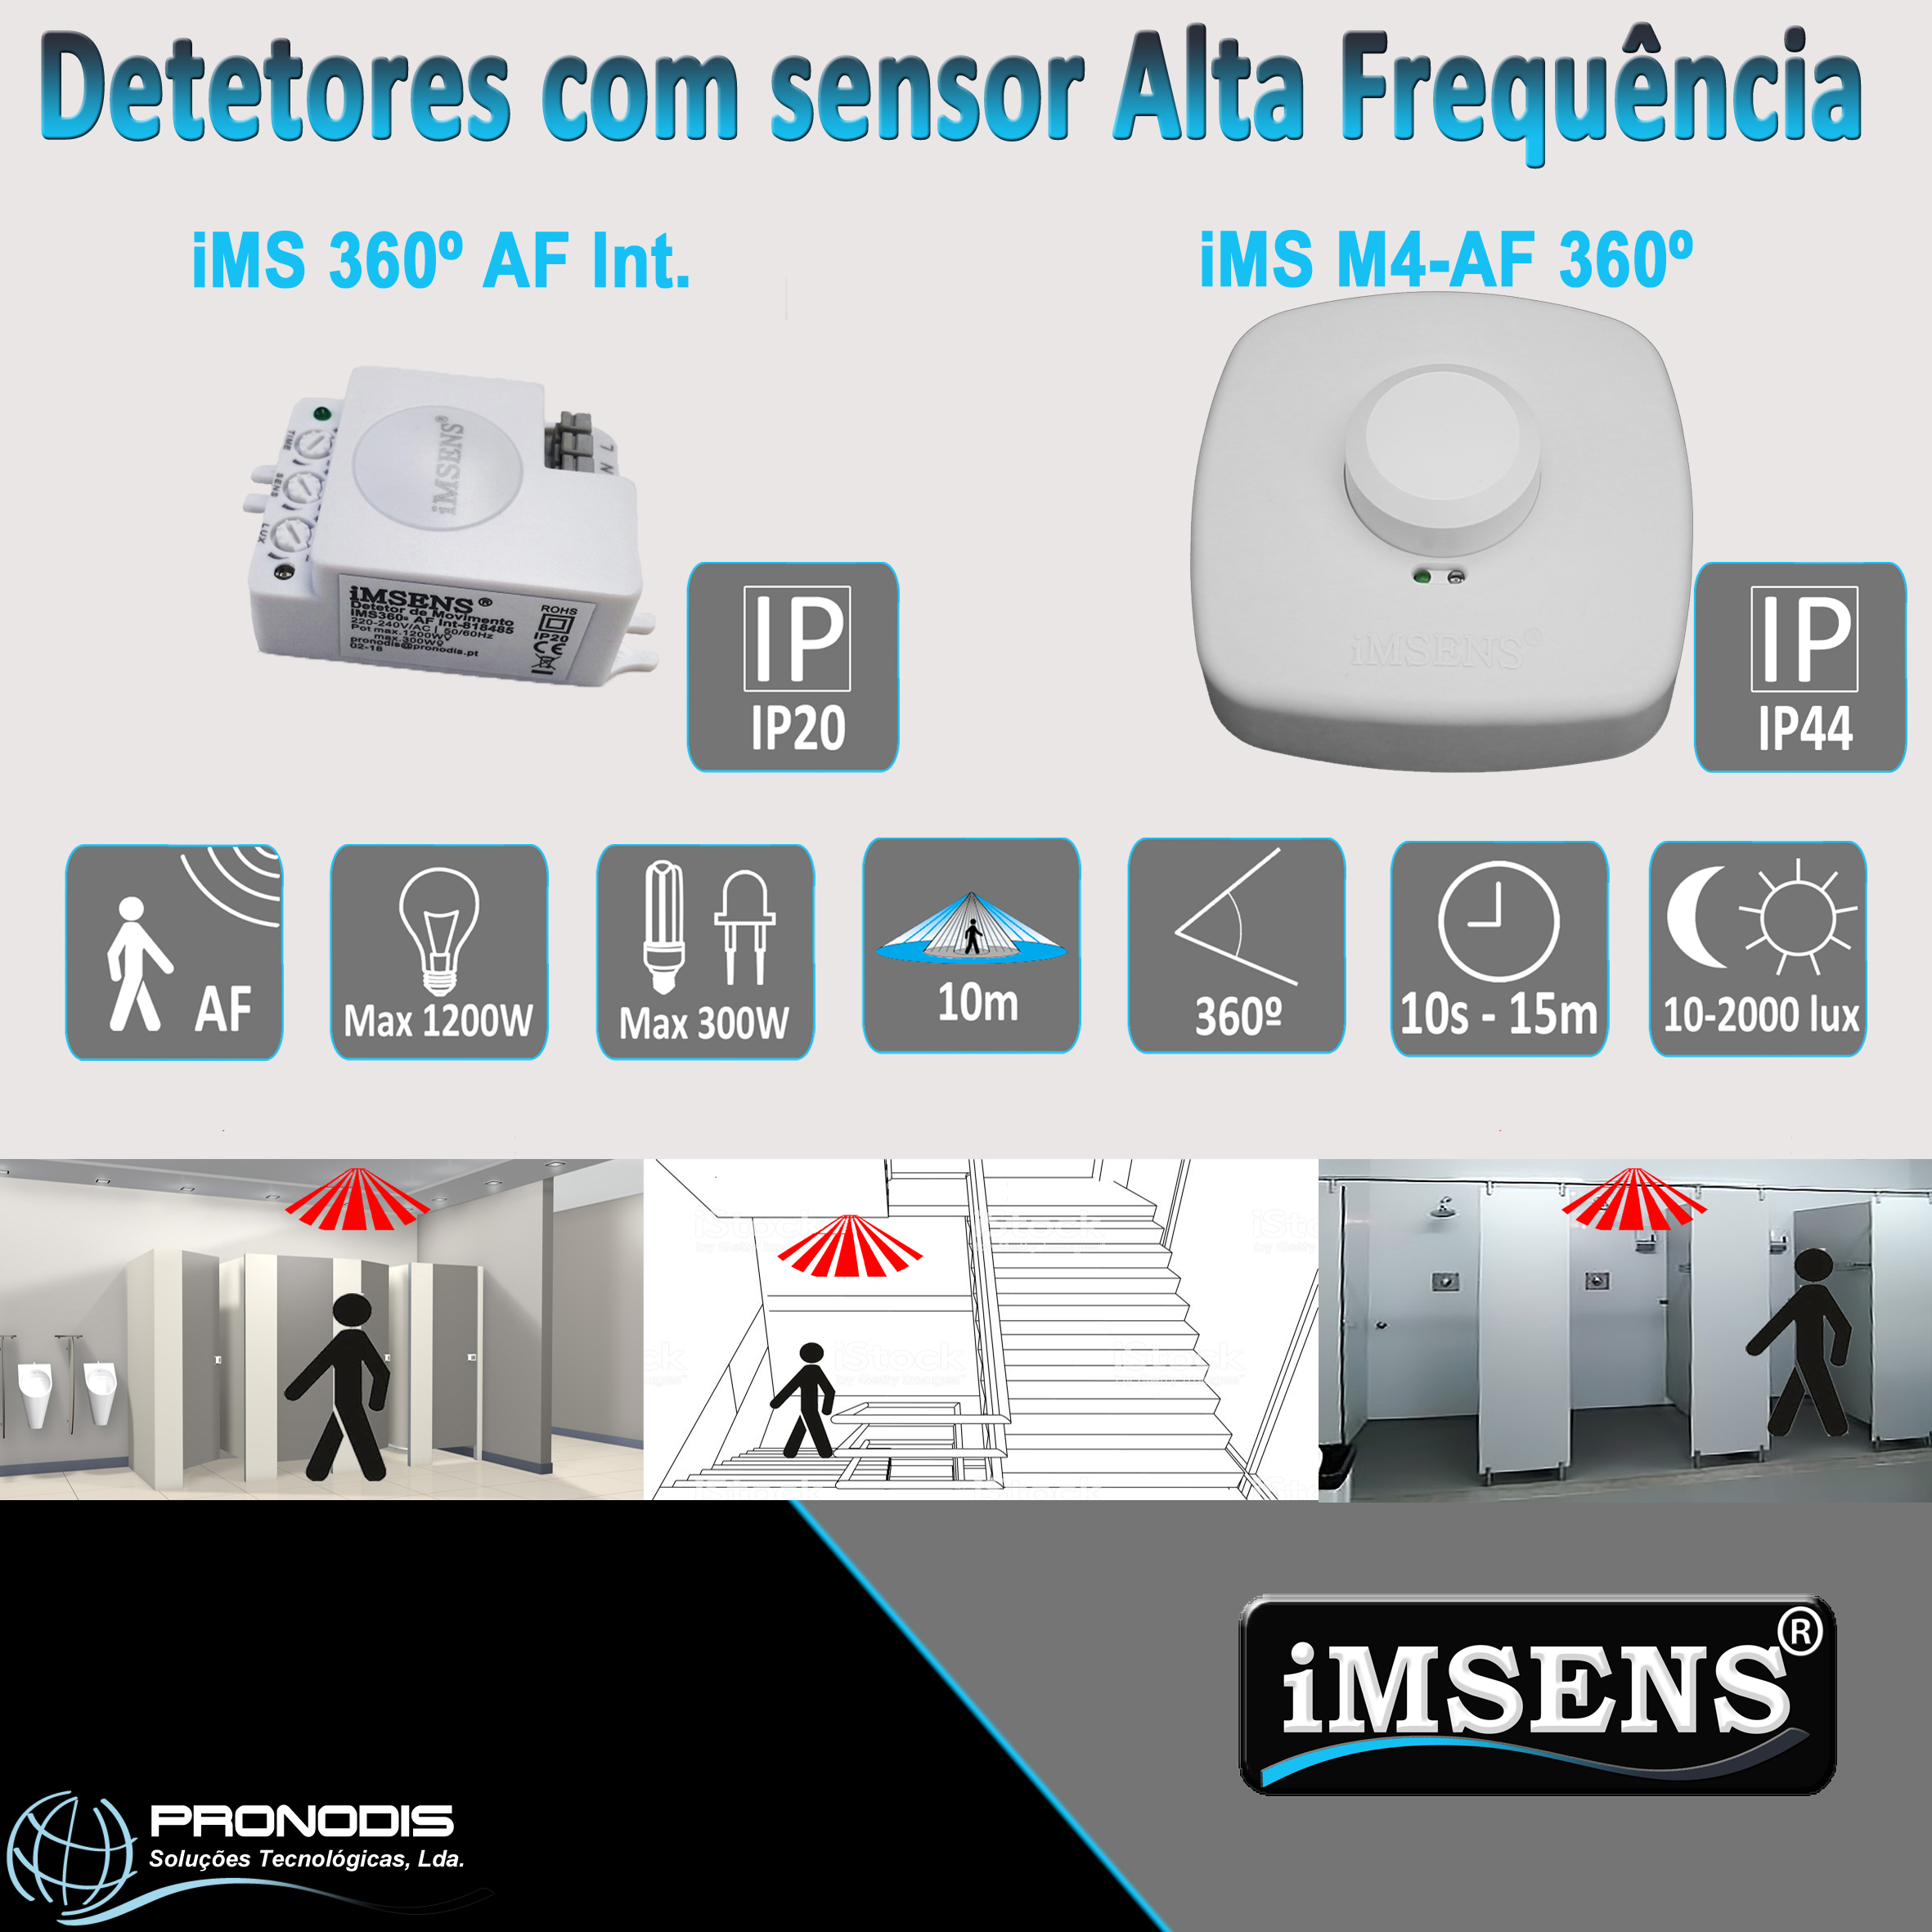 Gama de detetores com sensor Alta FrequÊncia da iMSENS